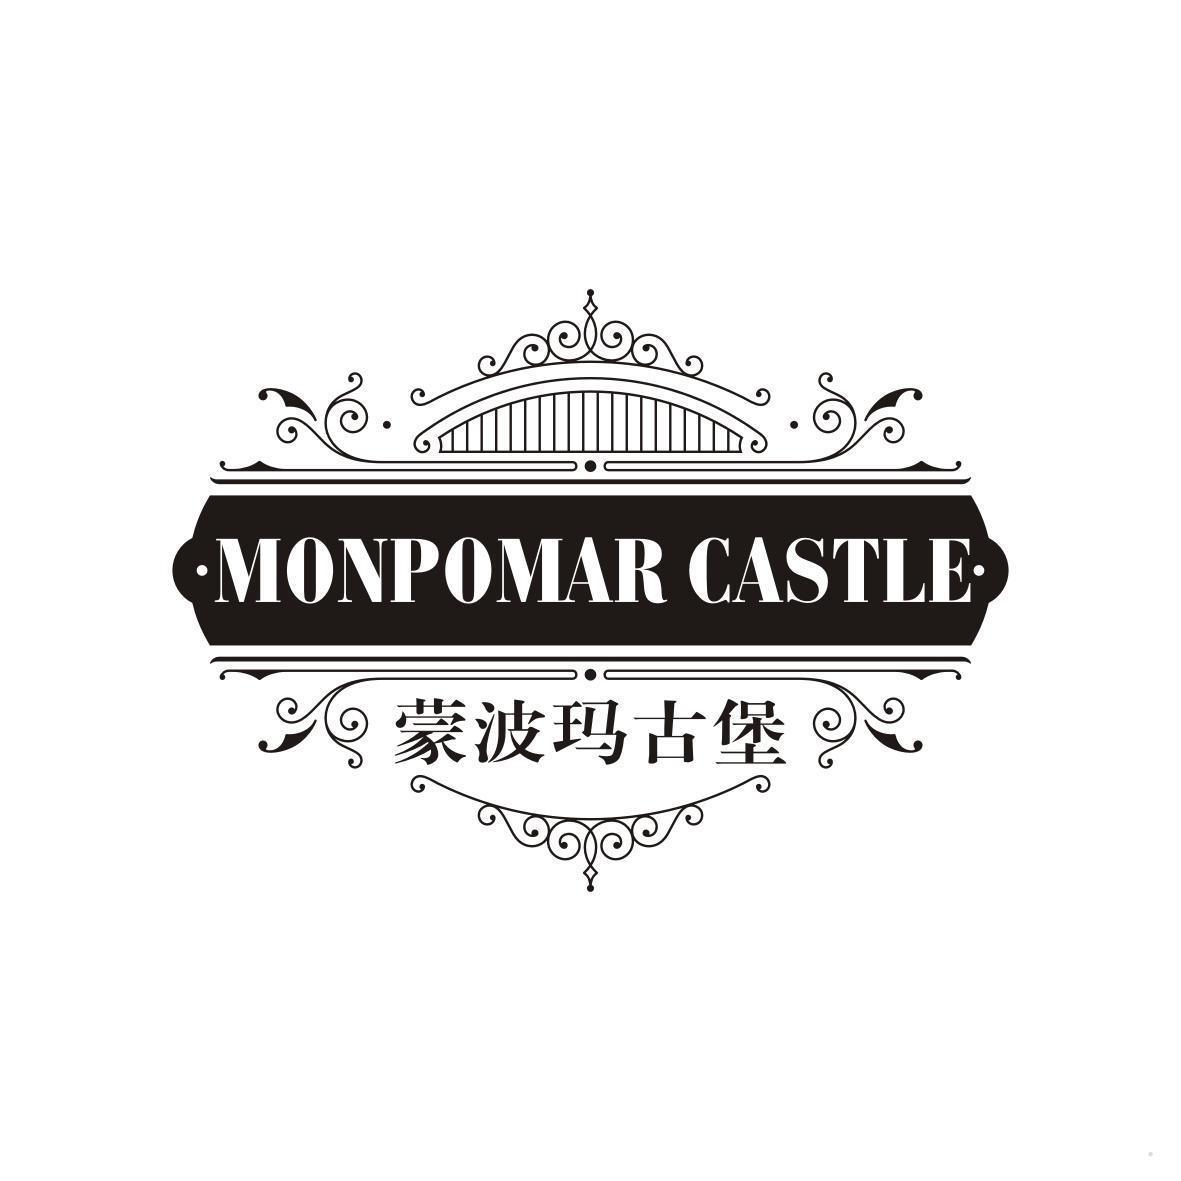 蒙波玛古堡 MONPOMAR CASTLE